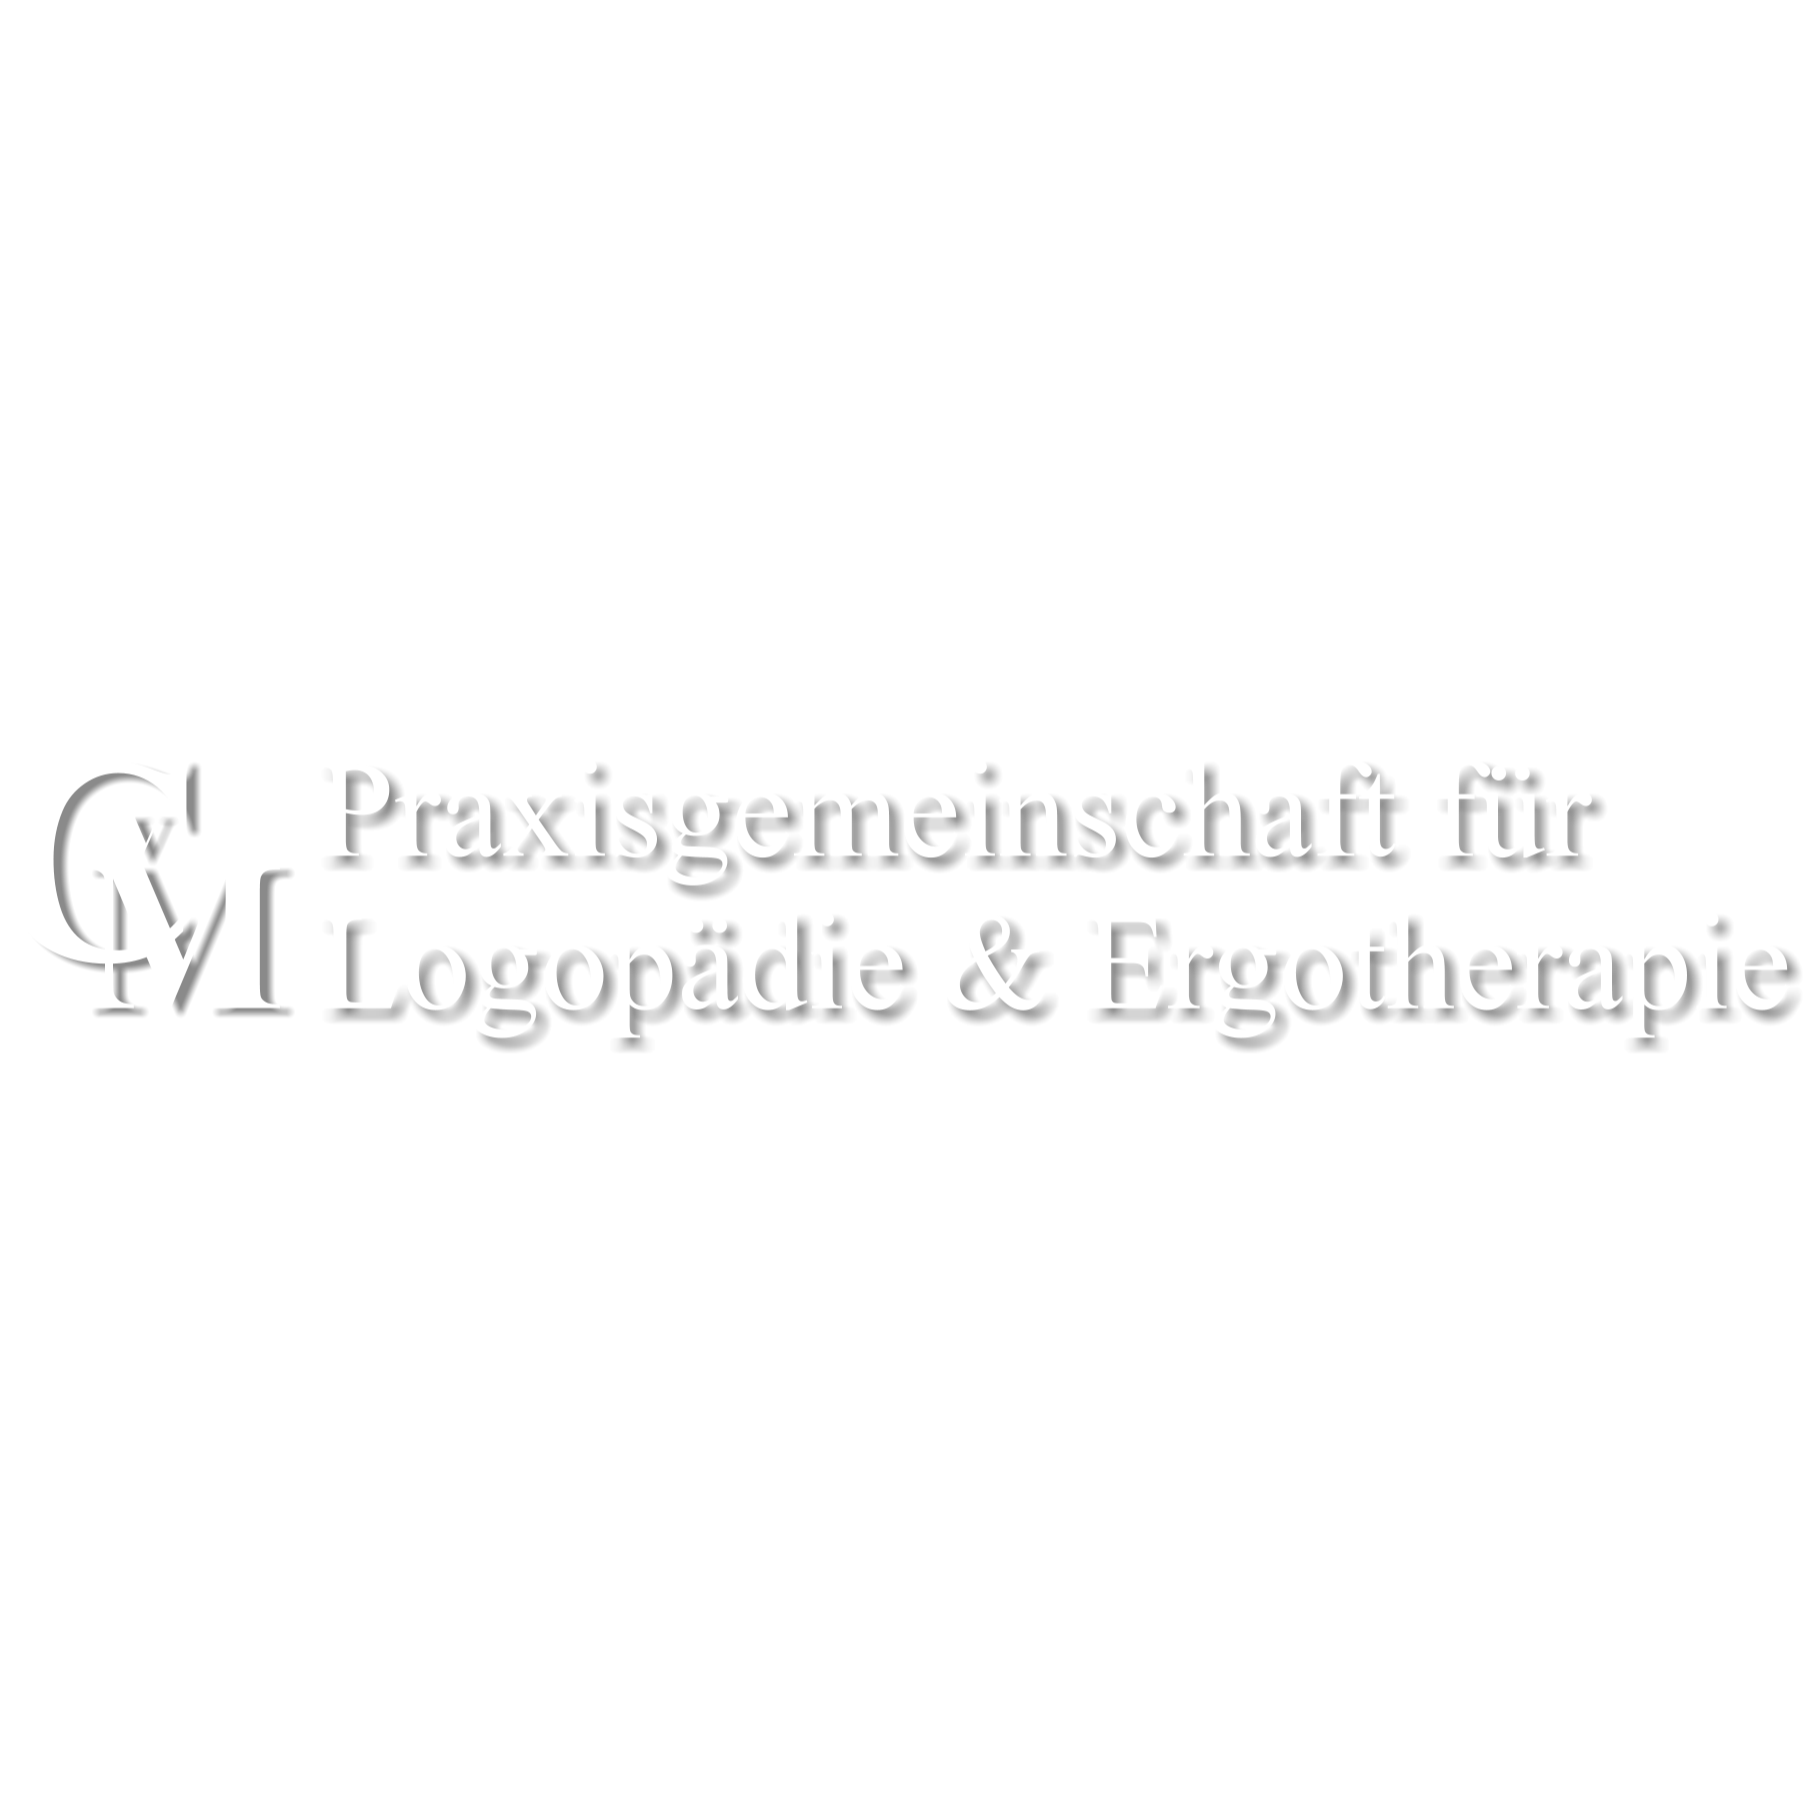 Logo CvM Praxis für Logopädie & Ergotherapie